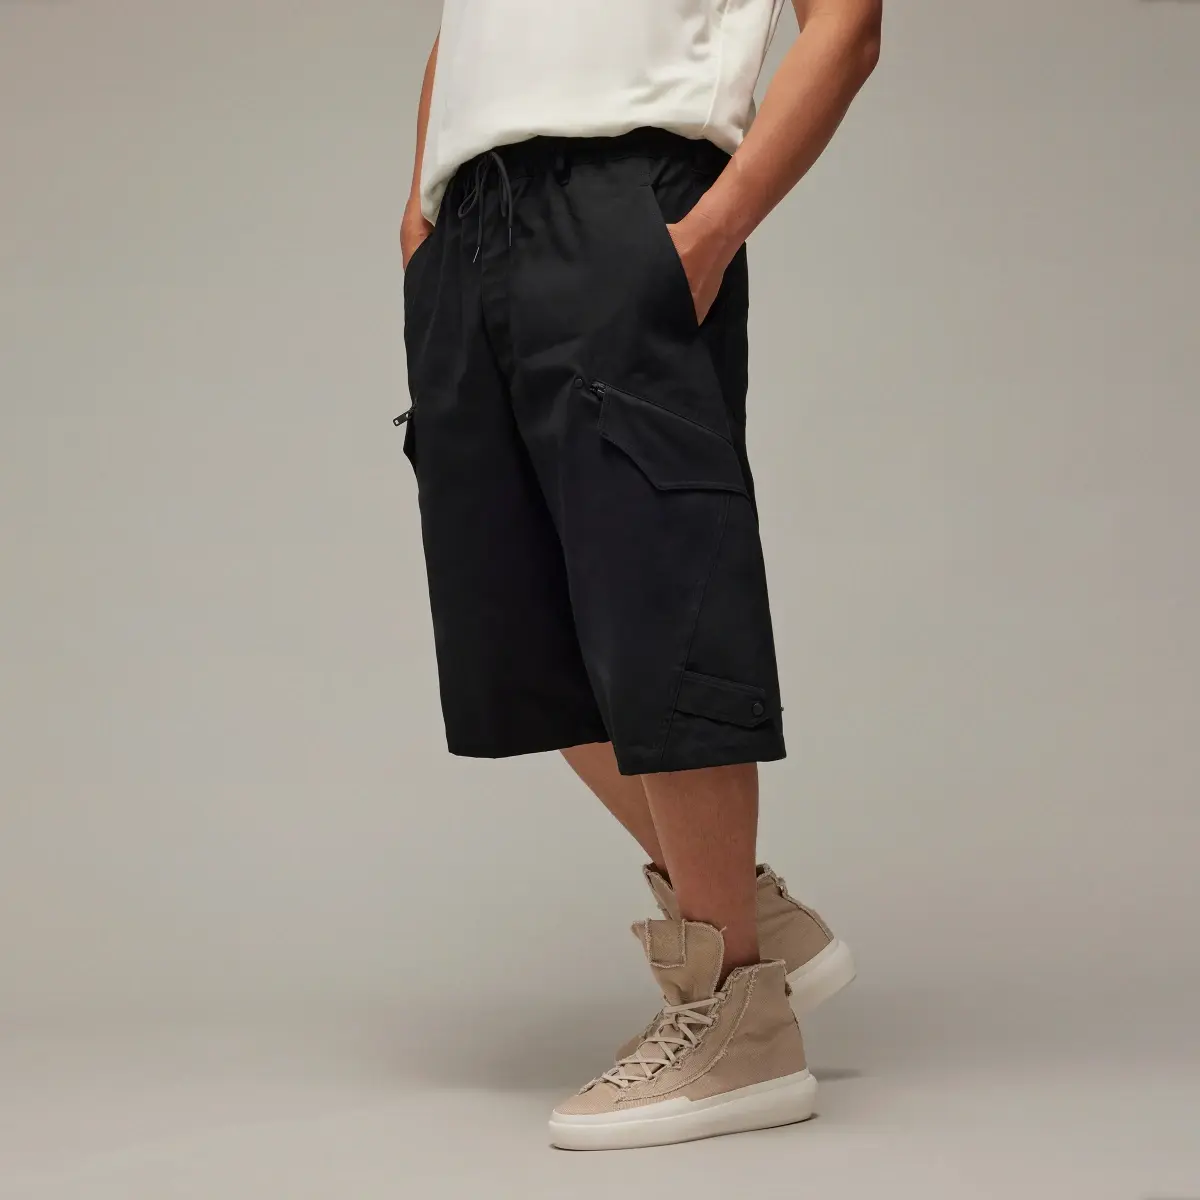 Adidas Y-3 Workwear Shorts. 2